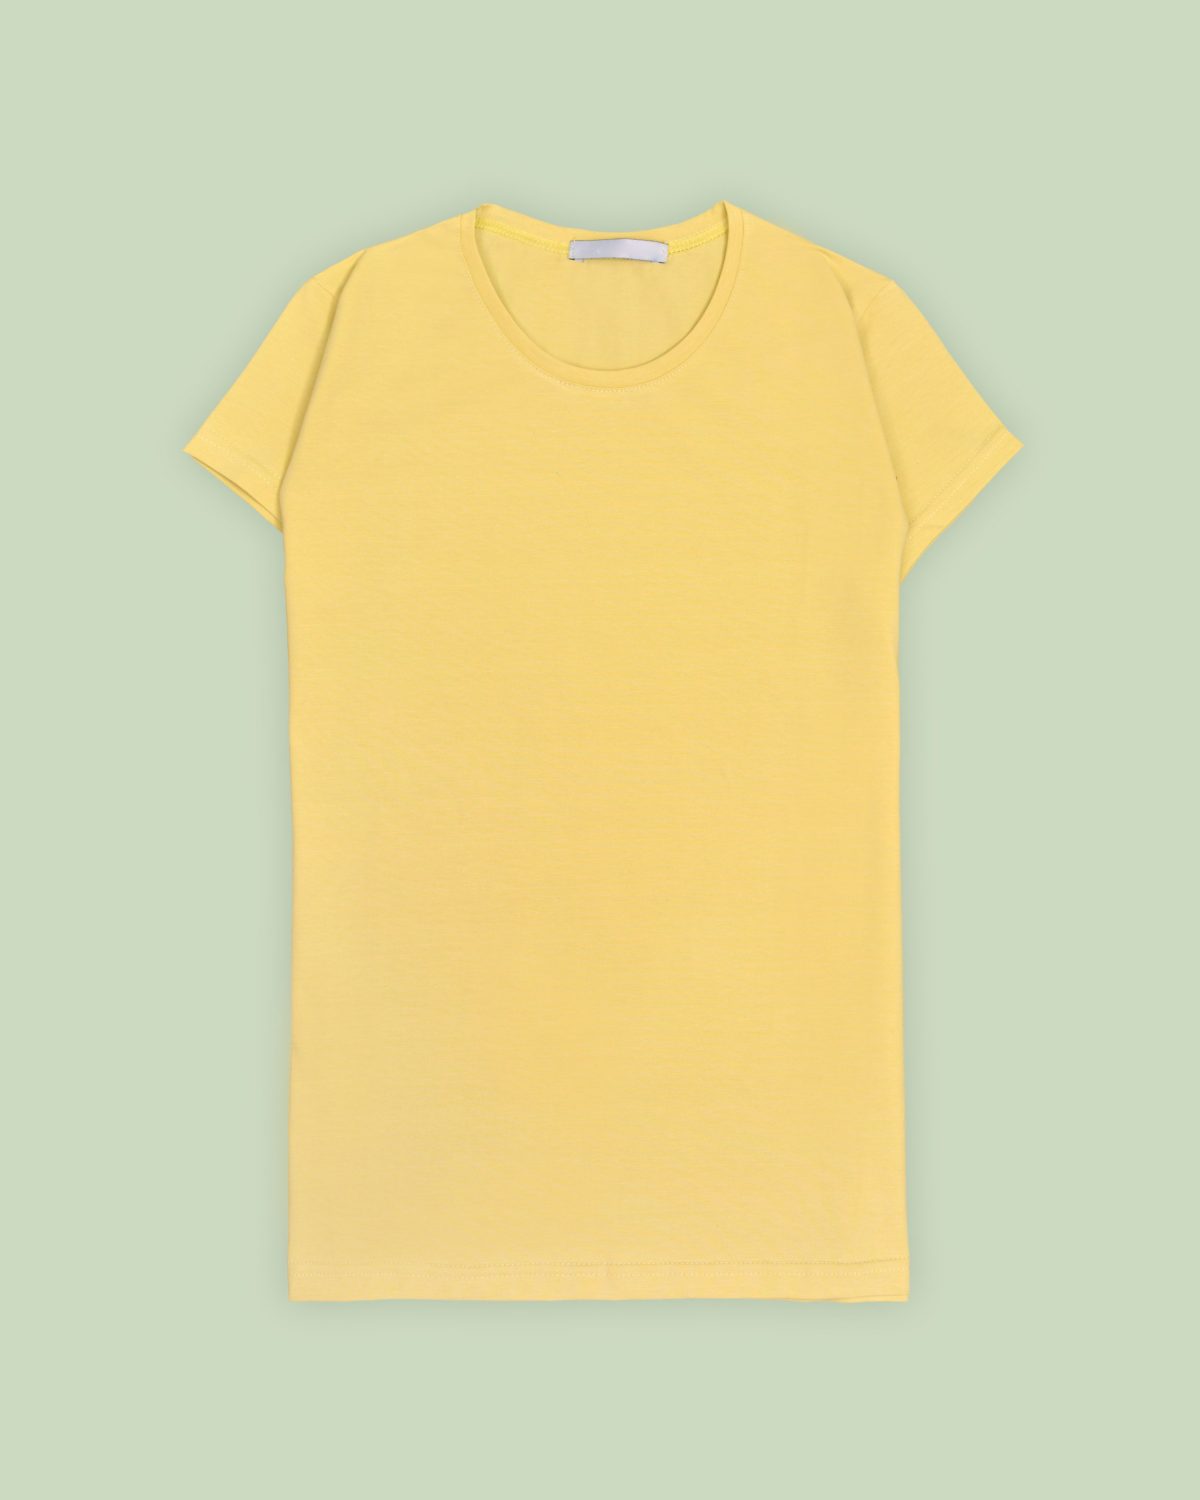 آستین کوتاه ساده,تیشرت زرد,پوشاک زنانه